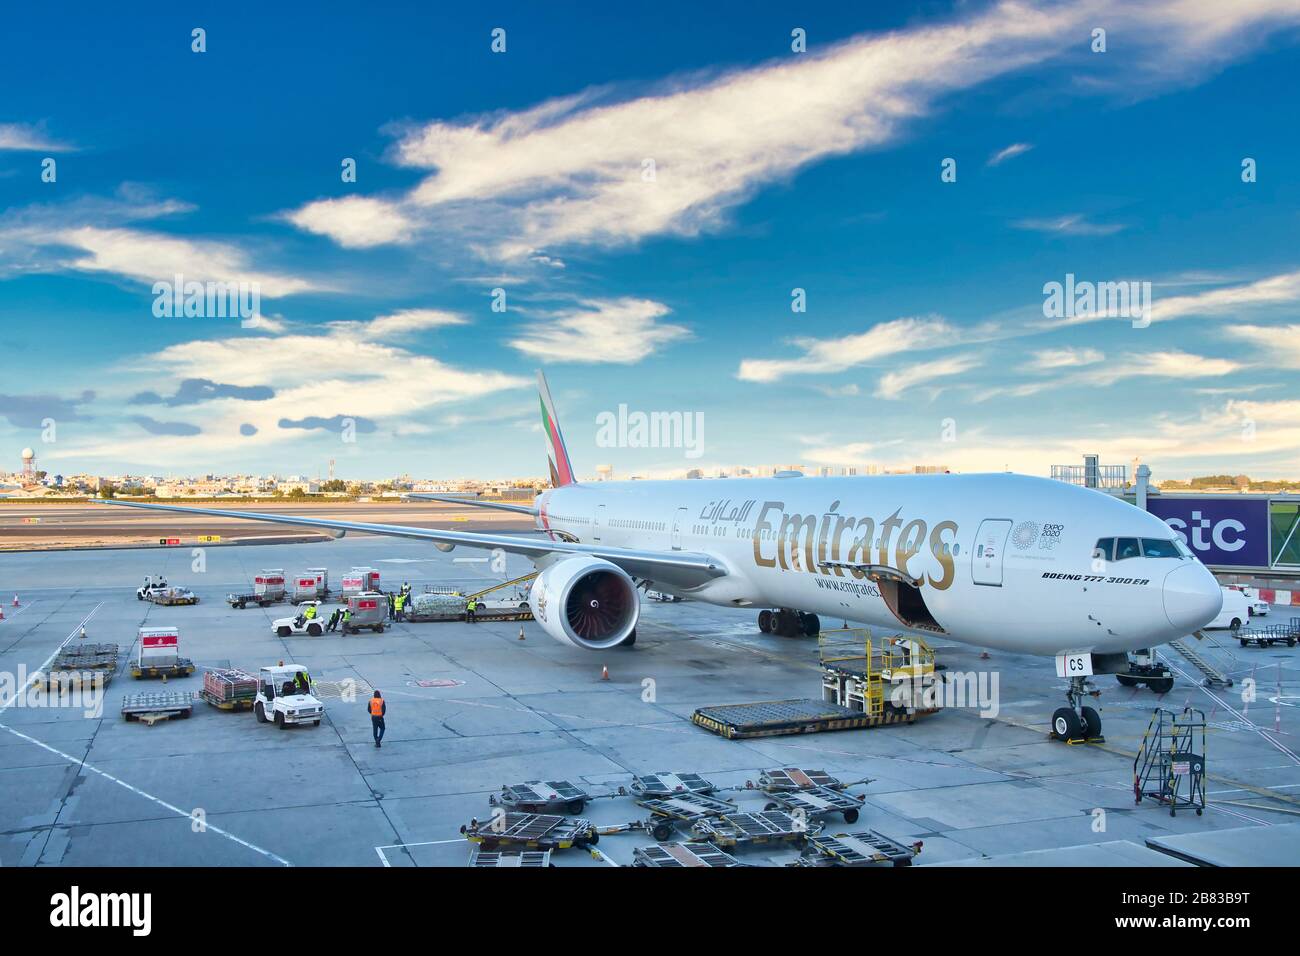 Eine Emirates Boeing 777 - 300er, das größte Passagierflugzeug der Welt, wartet bei Sonnenuntergang auf Passagiere und Verladung am Flughafen Bahrein. Stockfoto